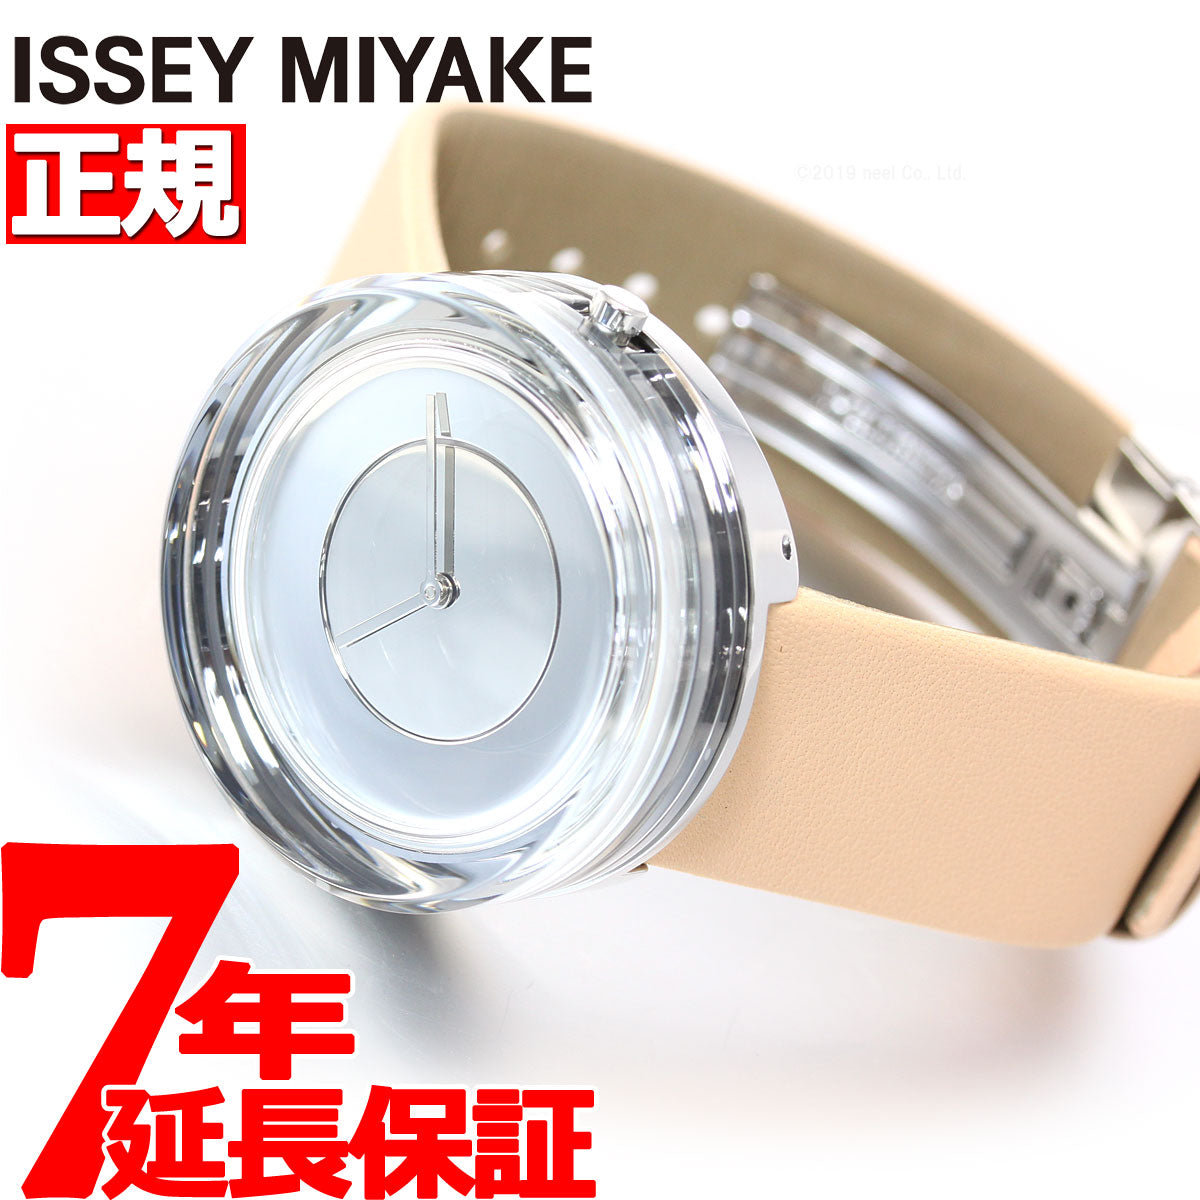 イッセイミヤケ ISSEY MIYAKE 腕時計 時計 メンズ NYAH003 – neel selectshop